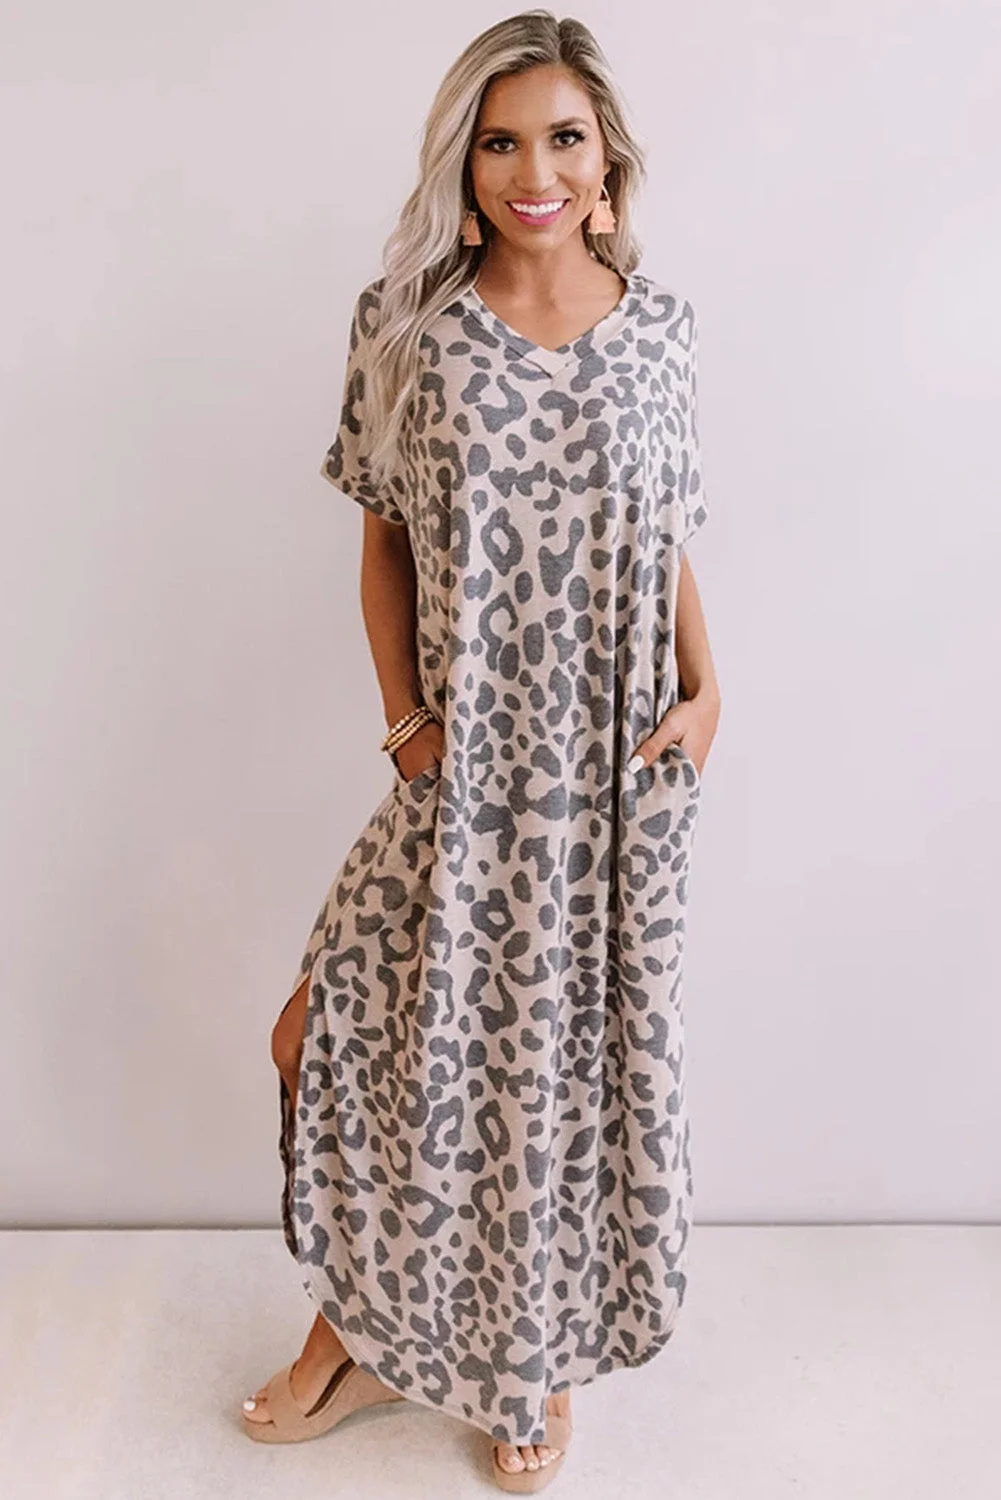 Buzzdaisy Casual Leopard Maxi Dress with Slits